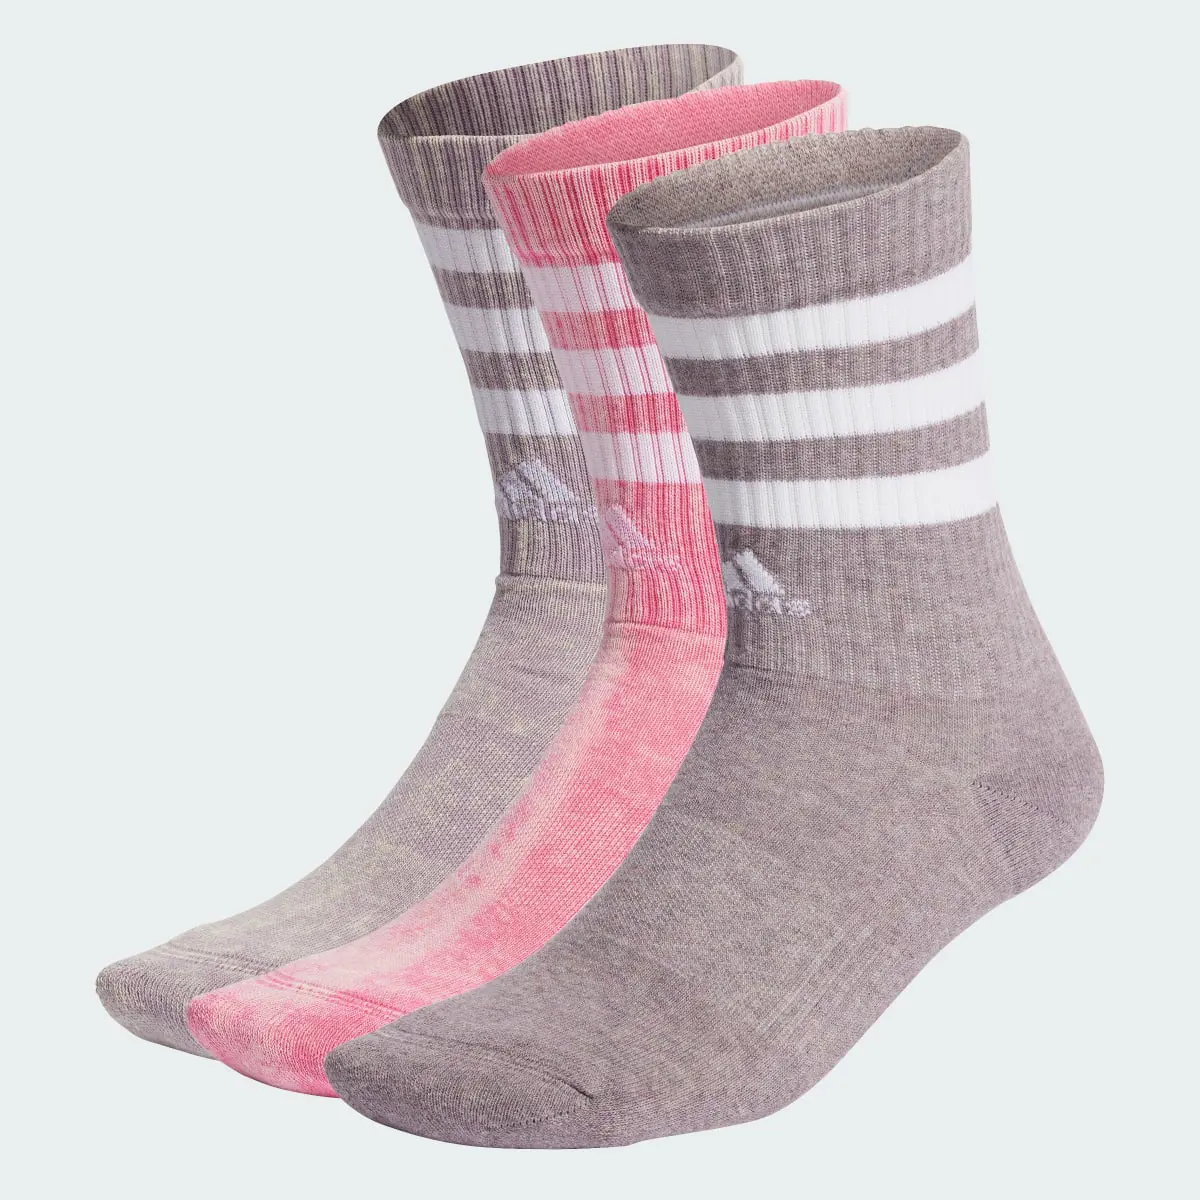 Adidas 3-Streifen Stonewash Crew Socken, 3 Paar. 1